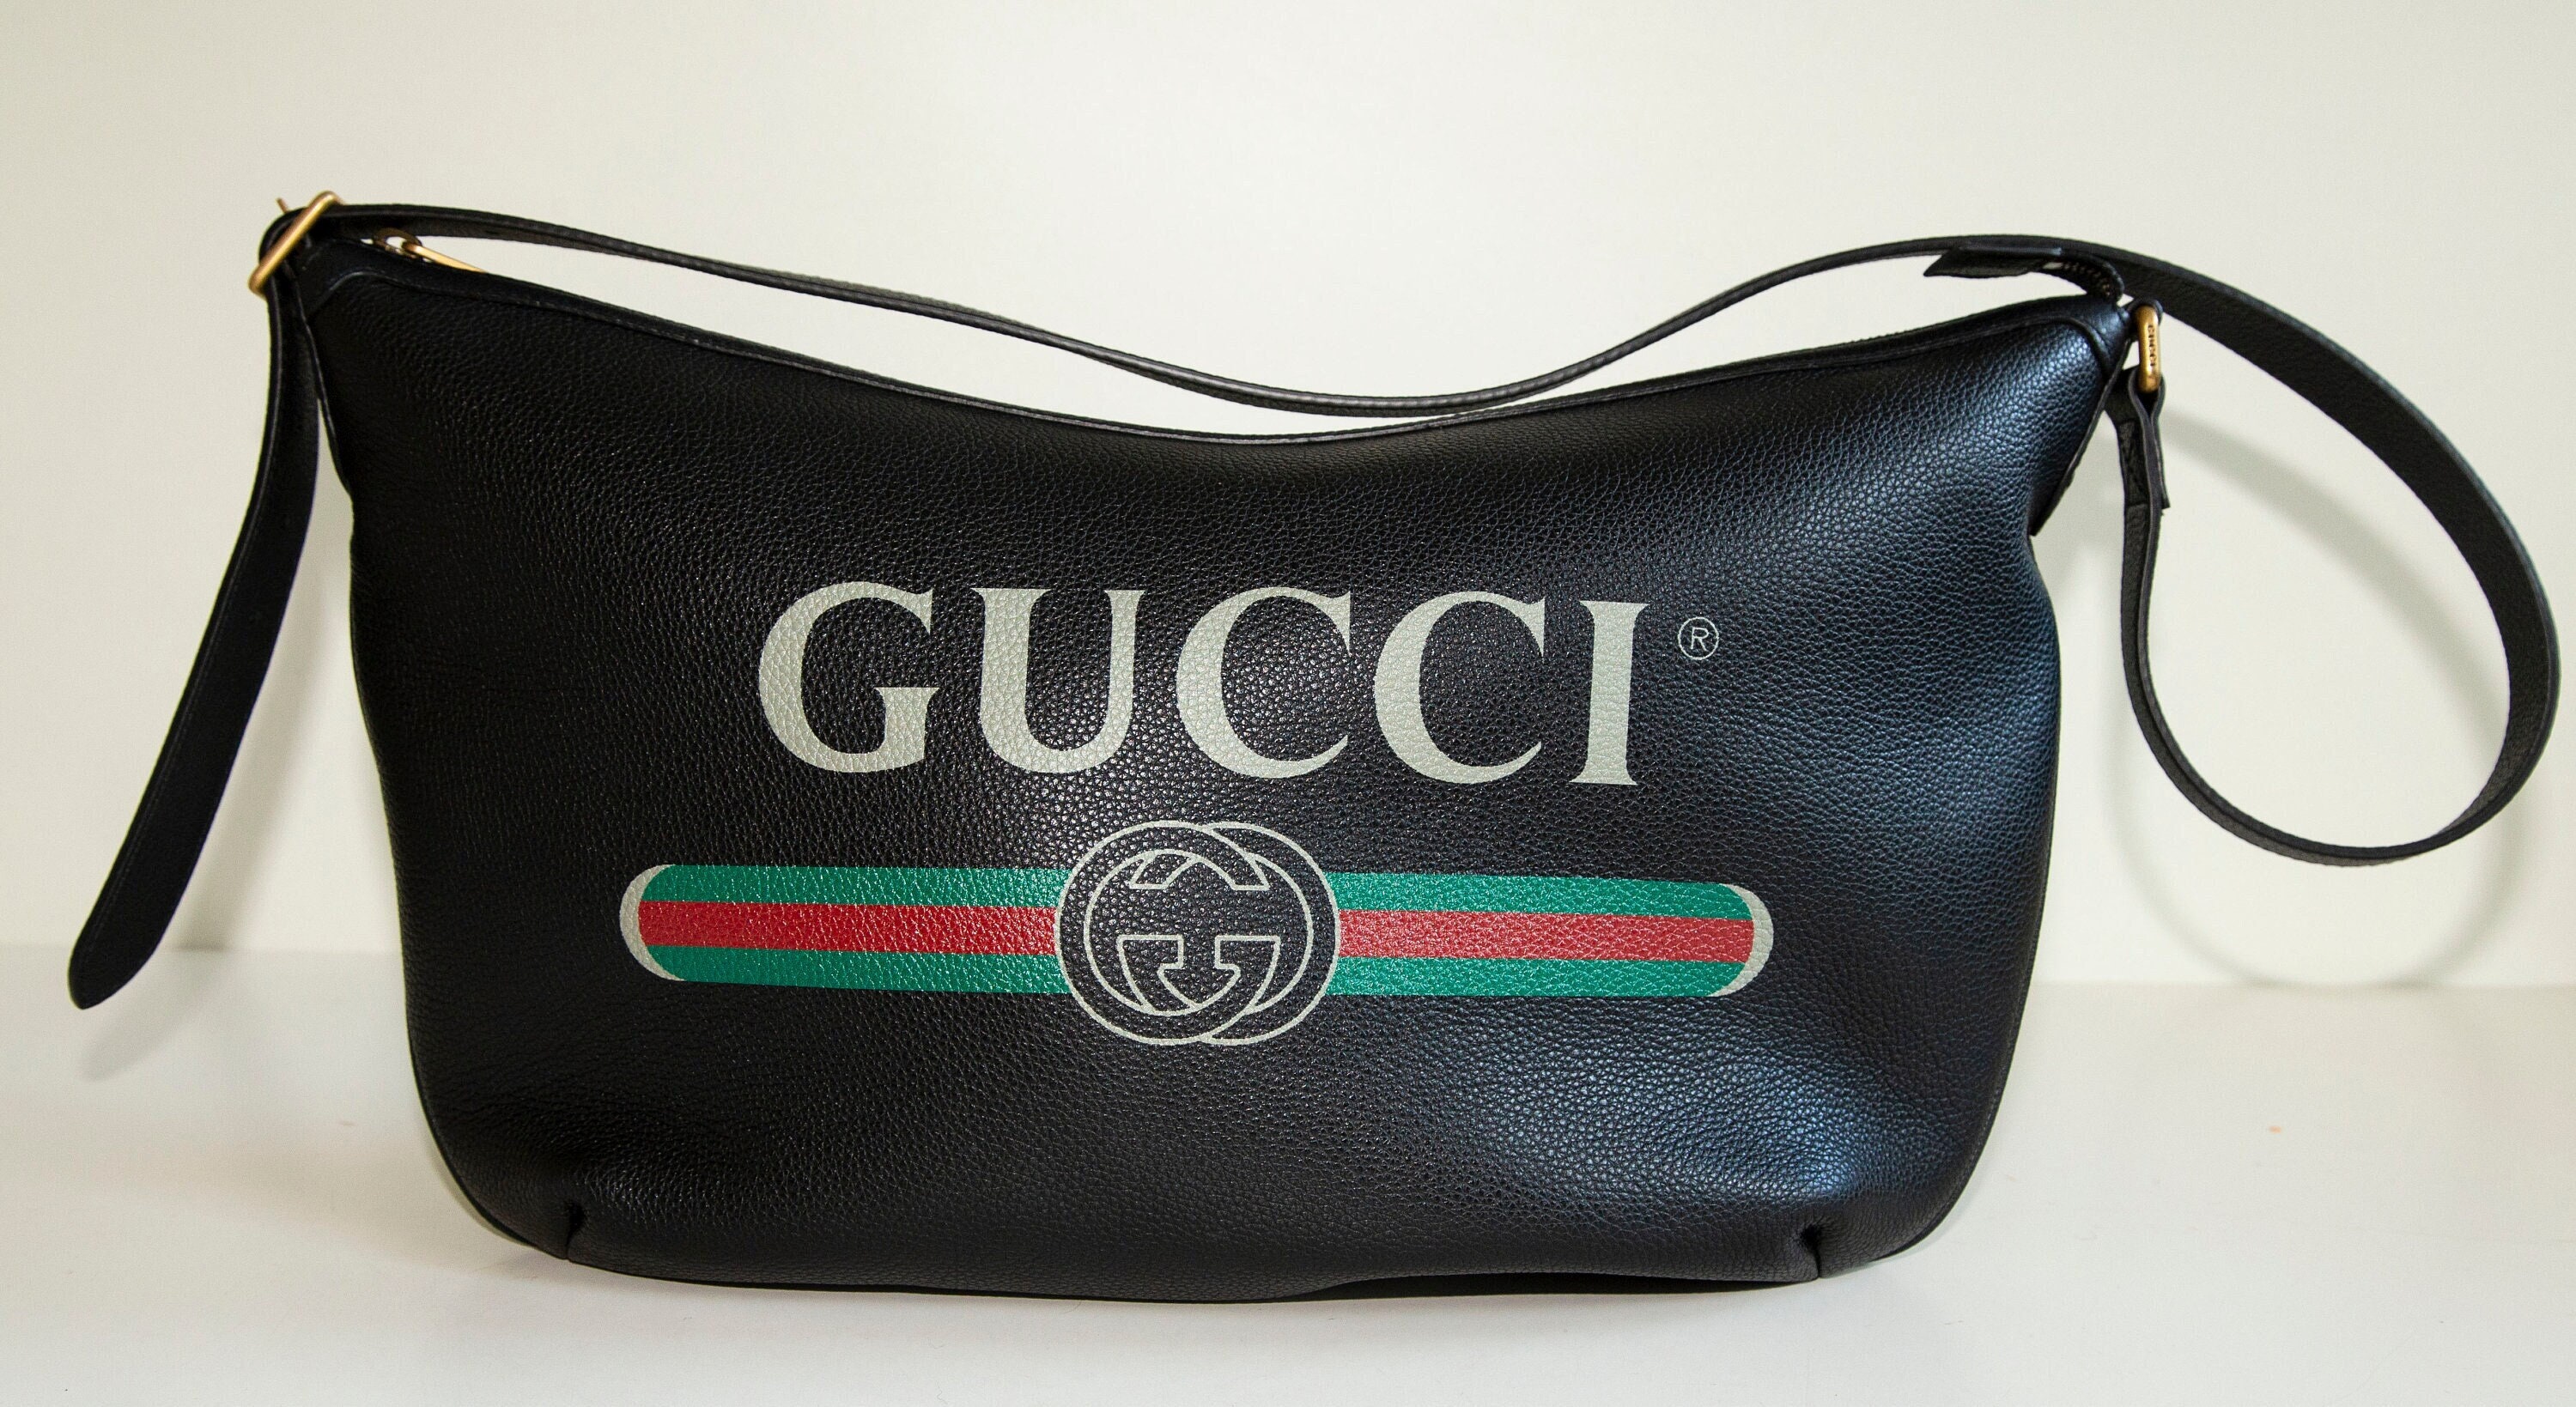 Gucci Half Moon Logo Calfskin Leather Hobo Shoulder Bag